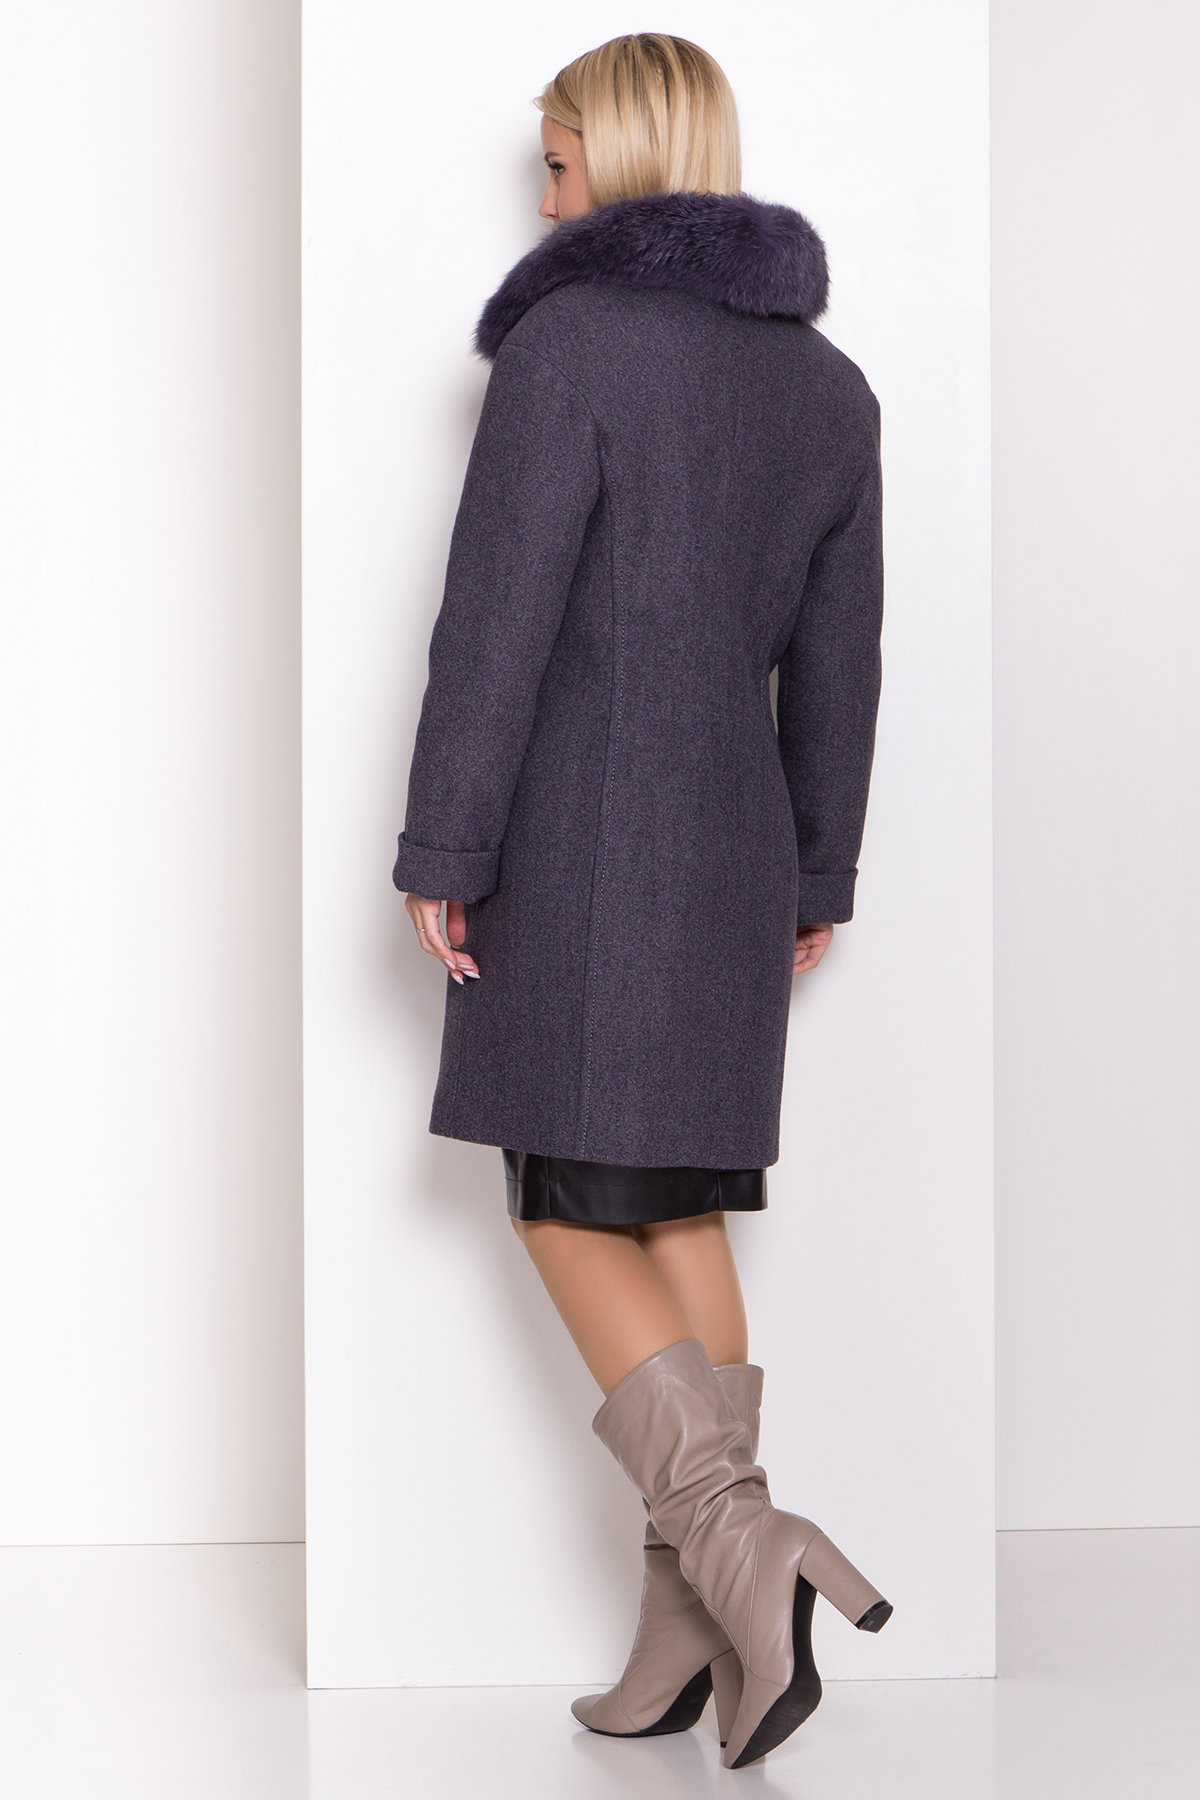 Полуприталенное зимнее пальто серых тонов Лизи 8170 Цвет: Т.синий 543